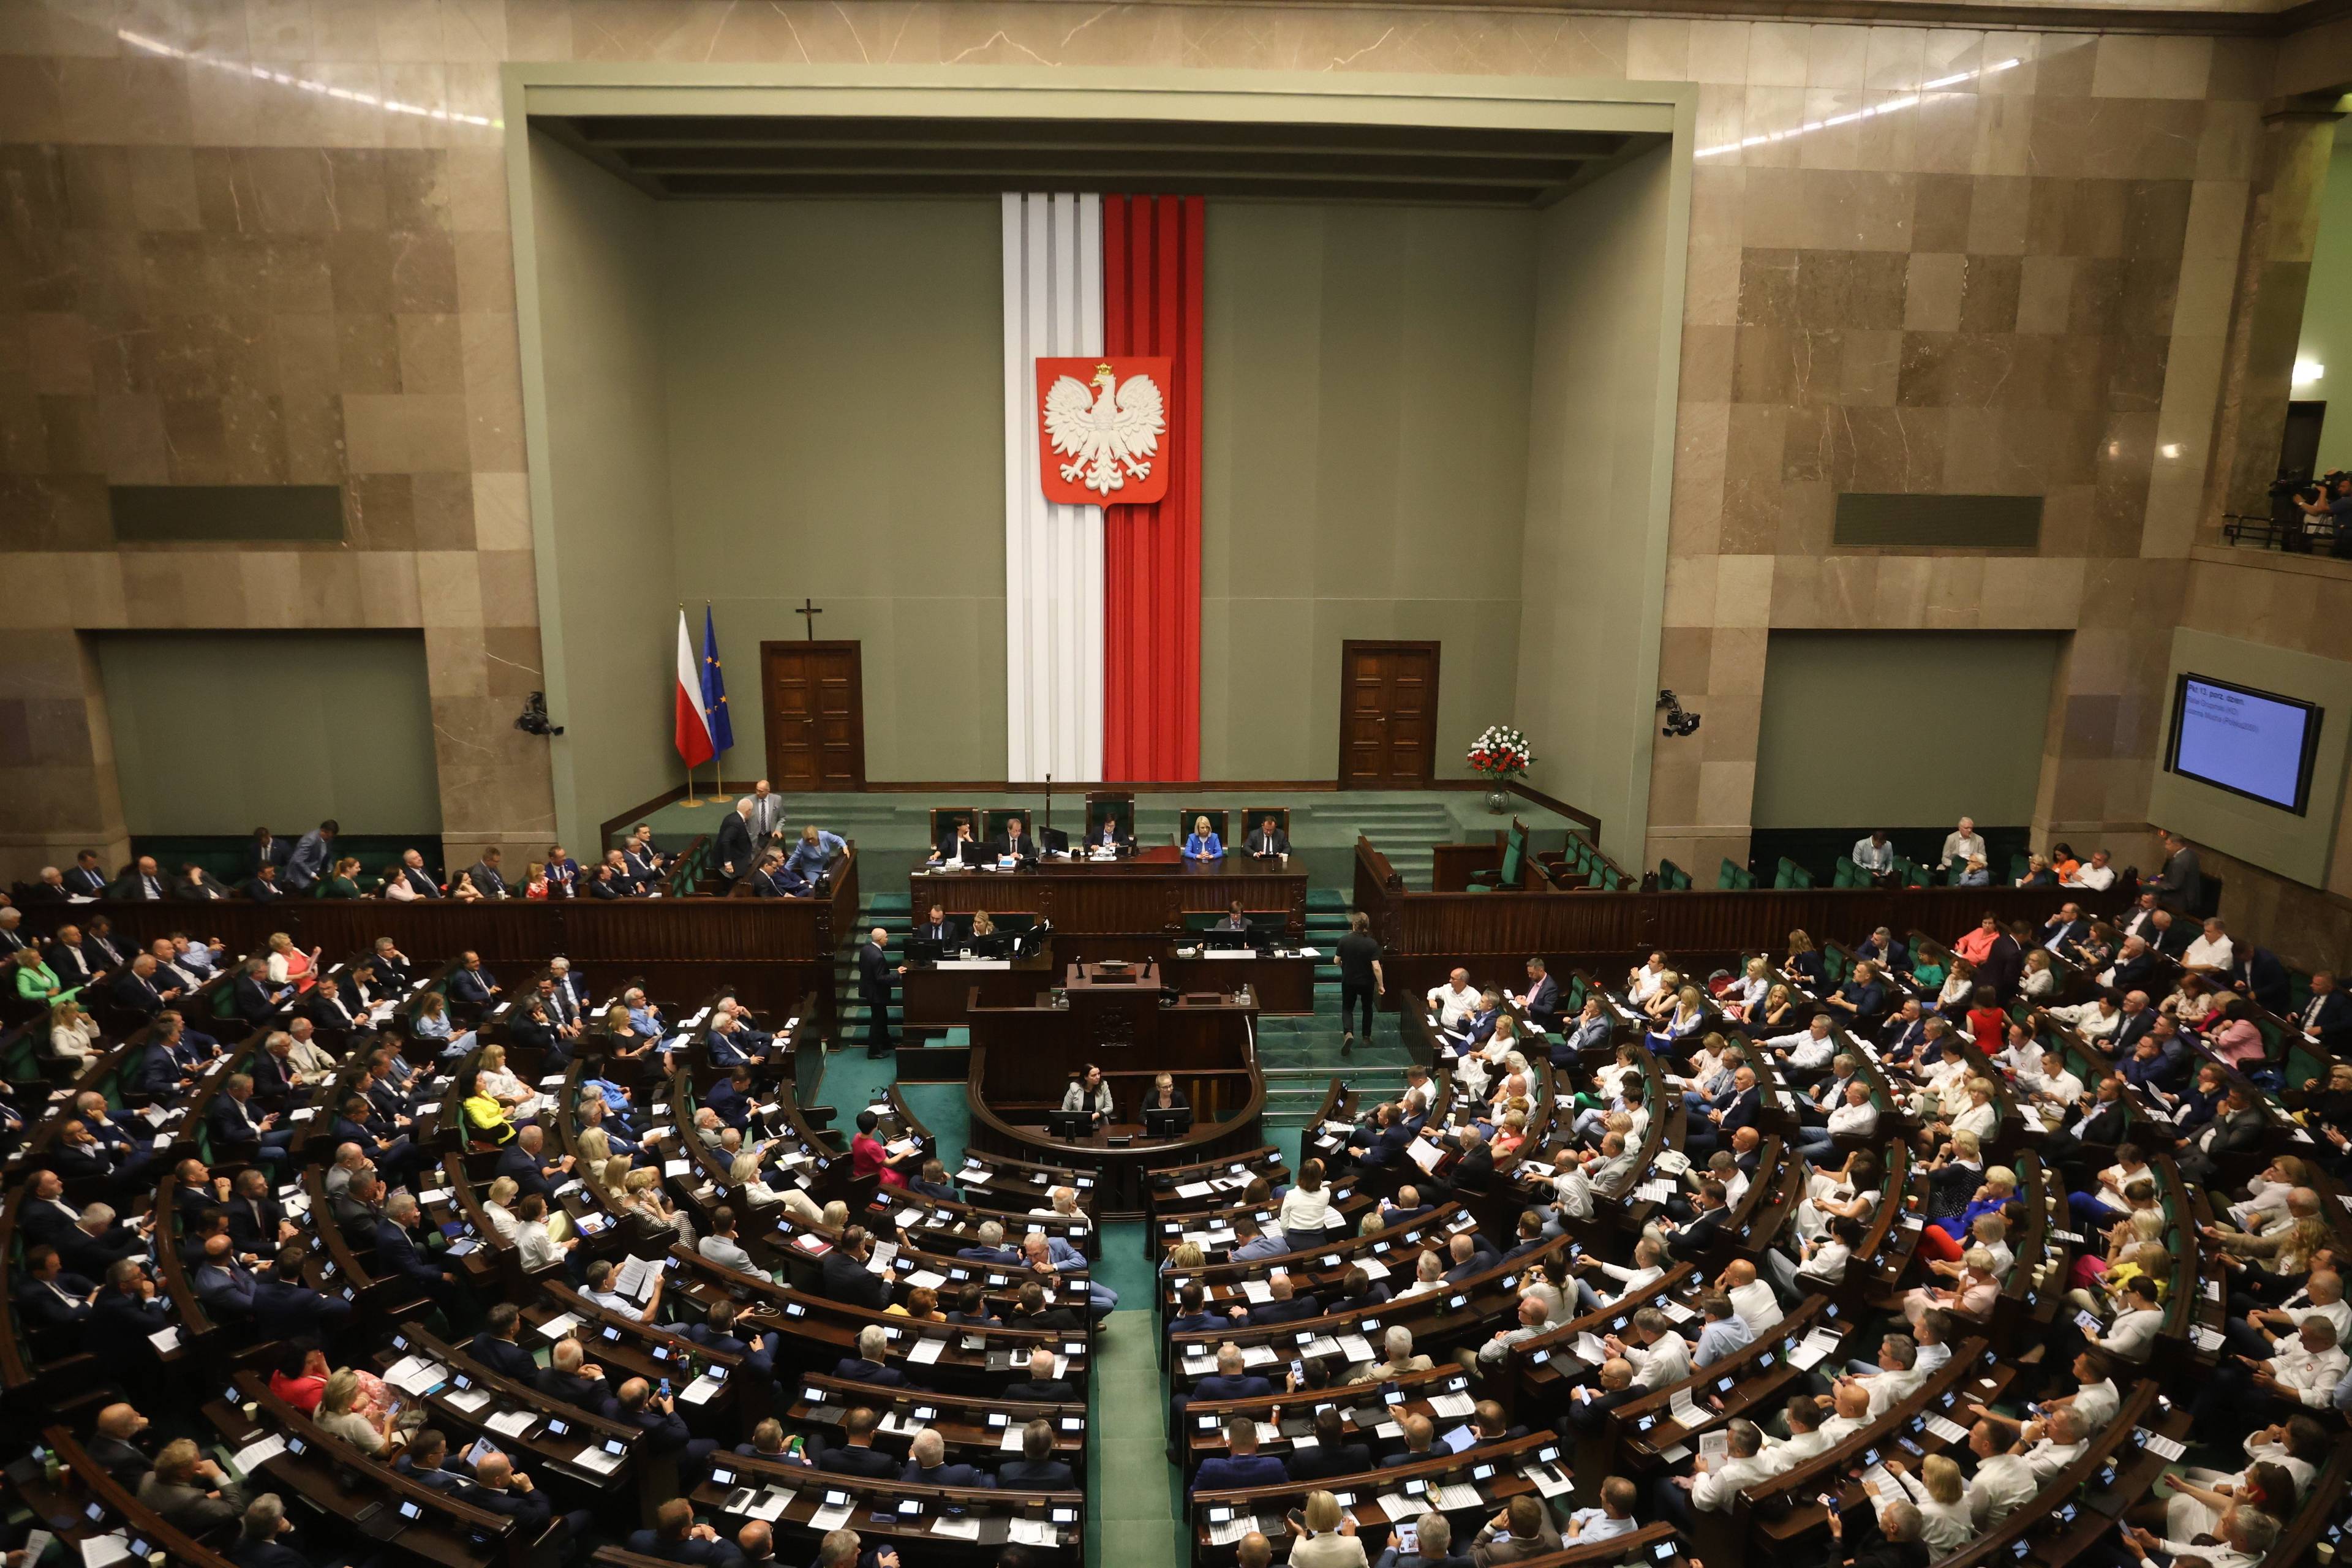 Widok obradującego Sejmu - cała sala plenarna wypełniona posłami i posłankami